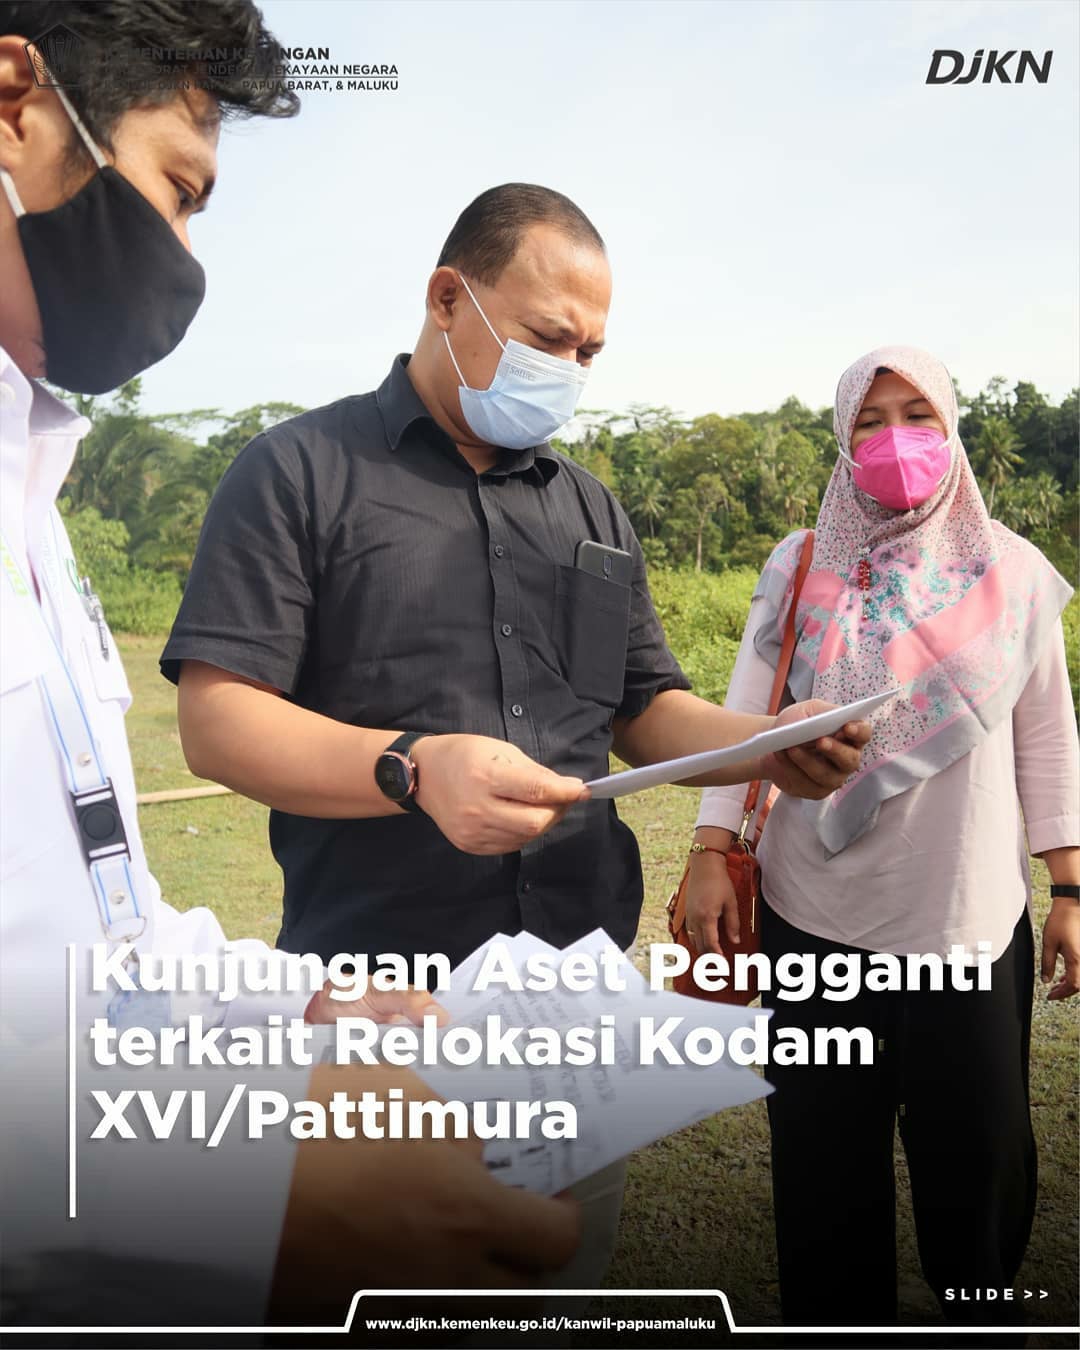 Kunjungan Lapangan Kepala Kanwil DJKN Papabaruku Meninjau Aset Relokasi Kodam XVI/Pattimura Ambon